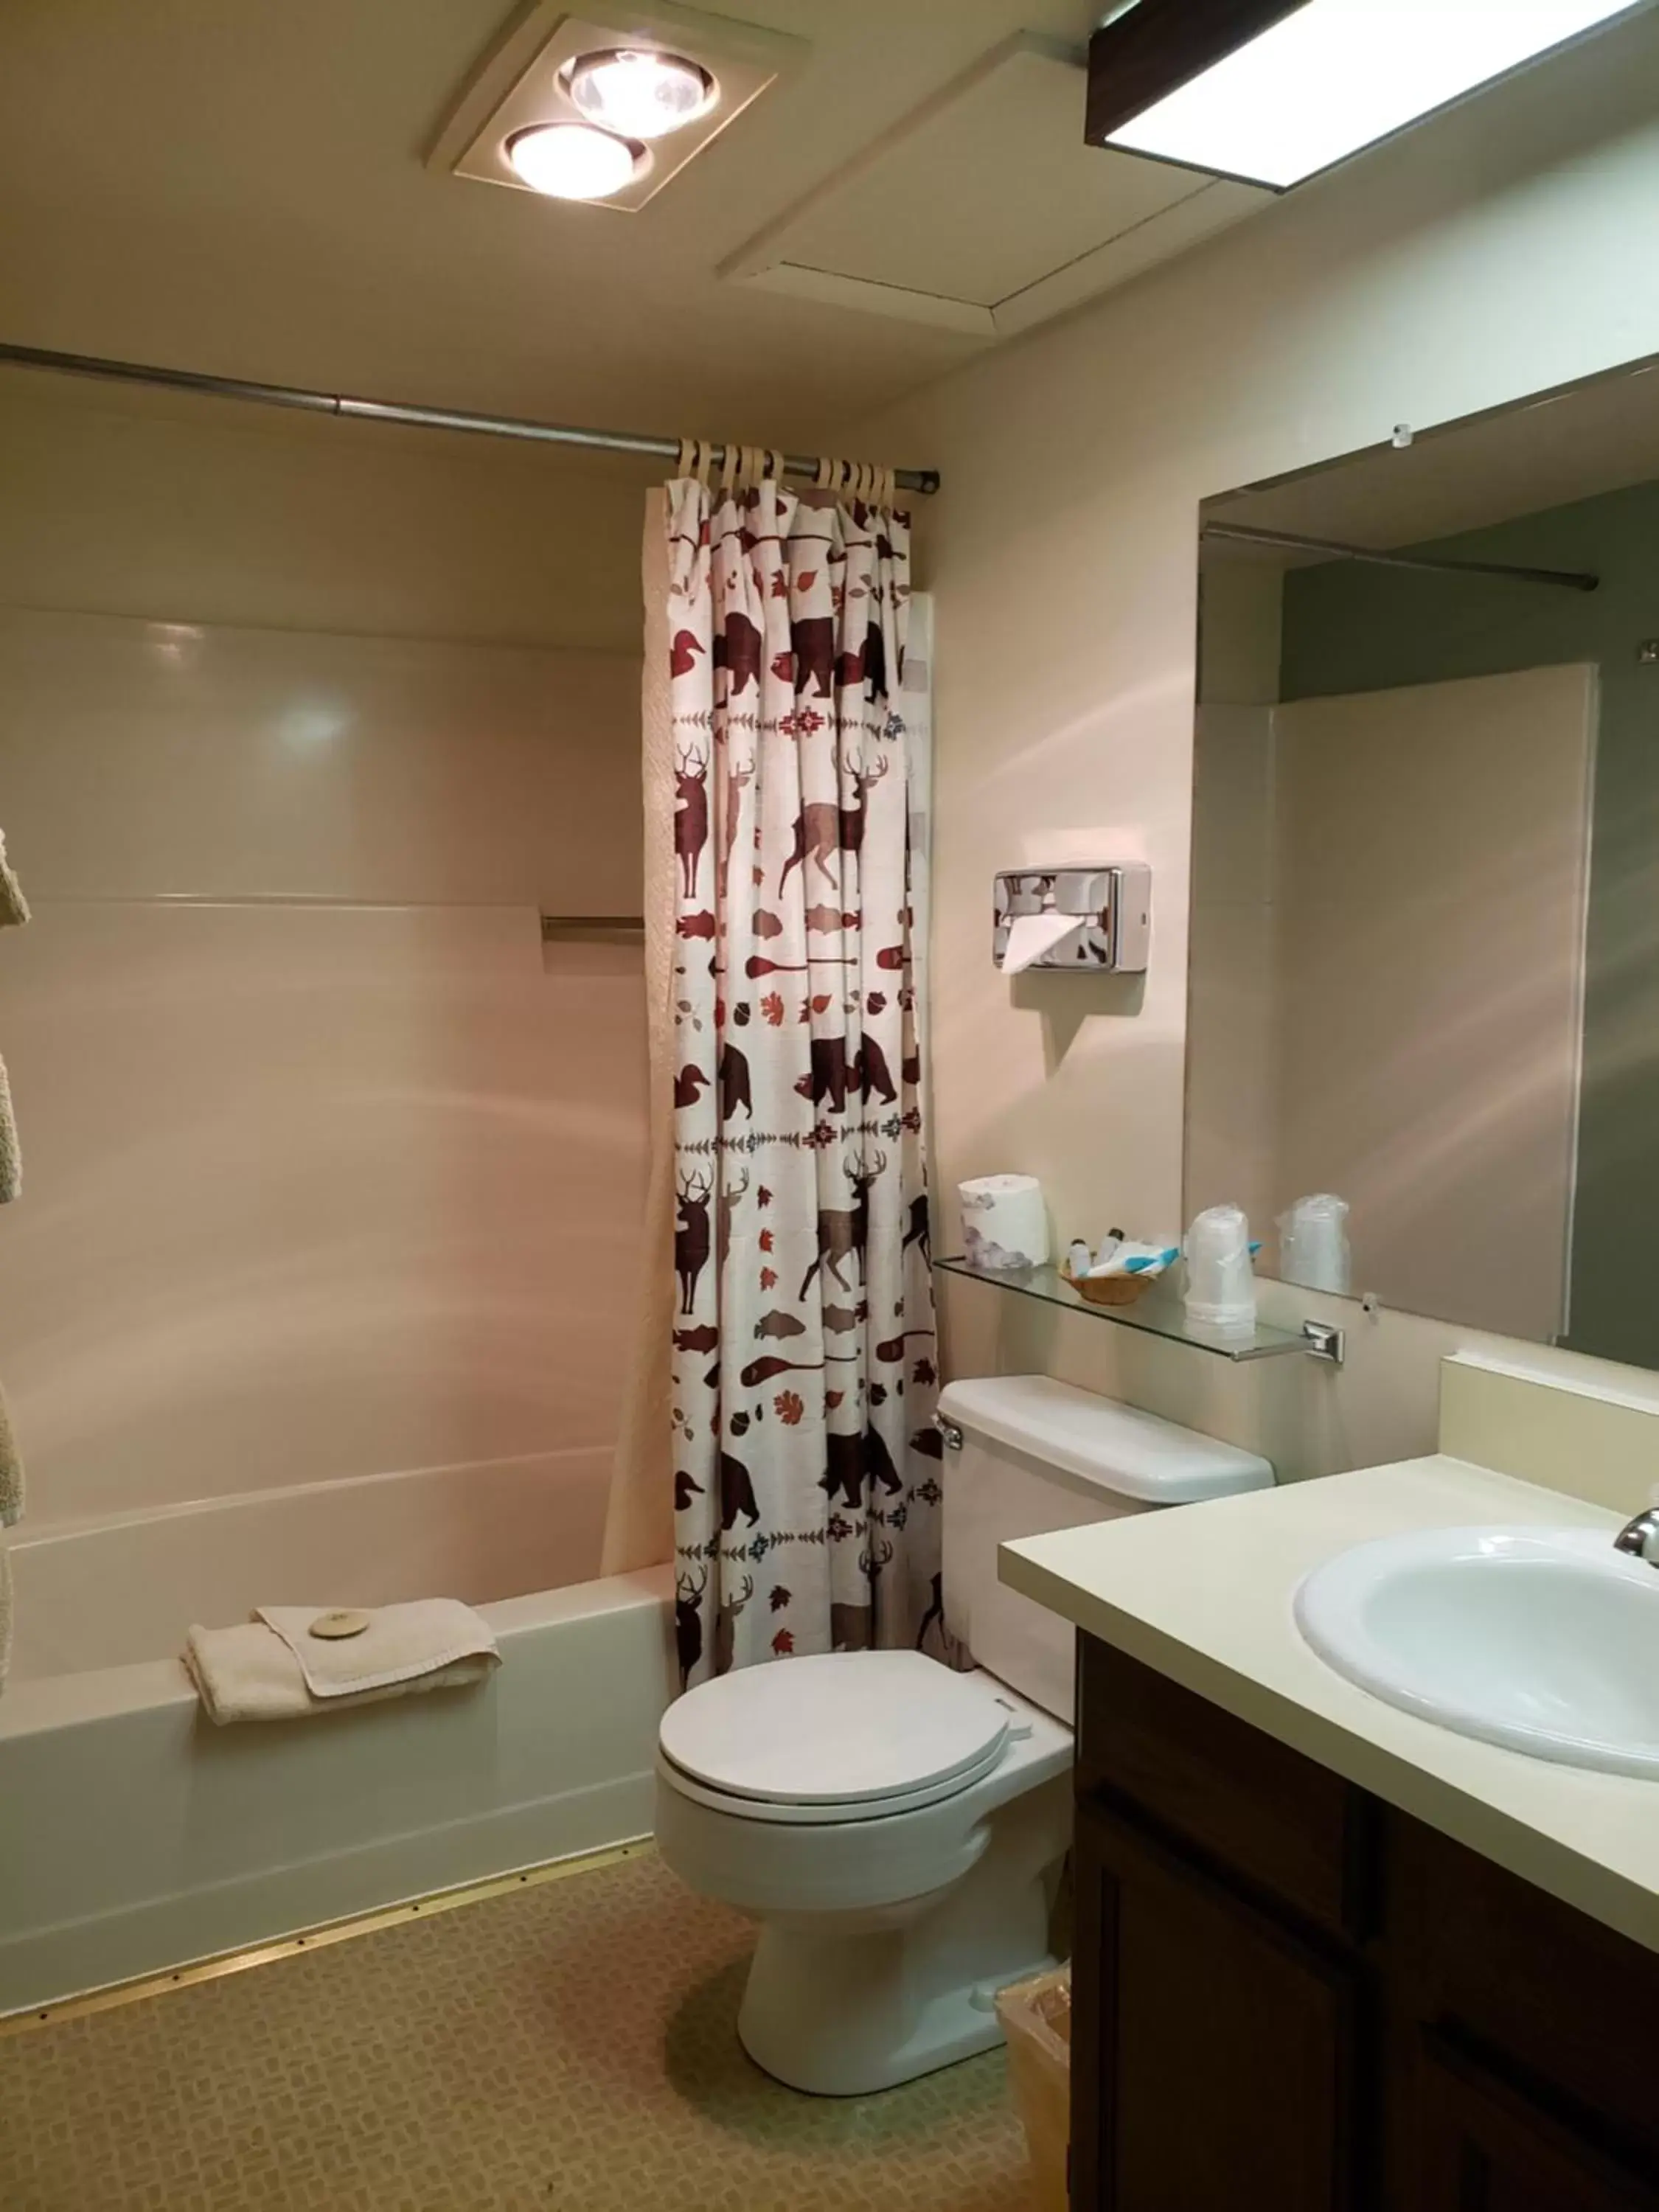 Bathroom in Flaming Gorge Resort